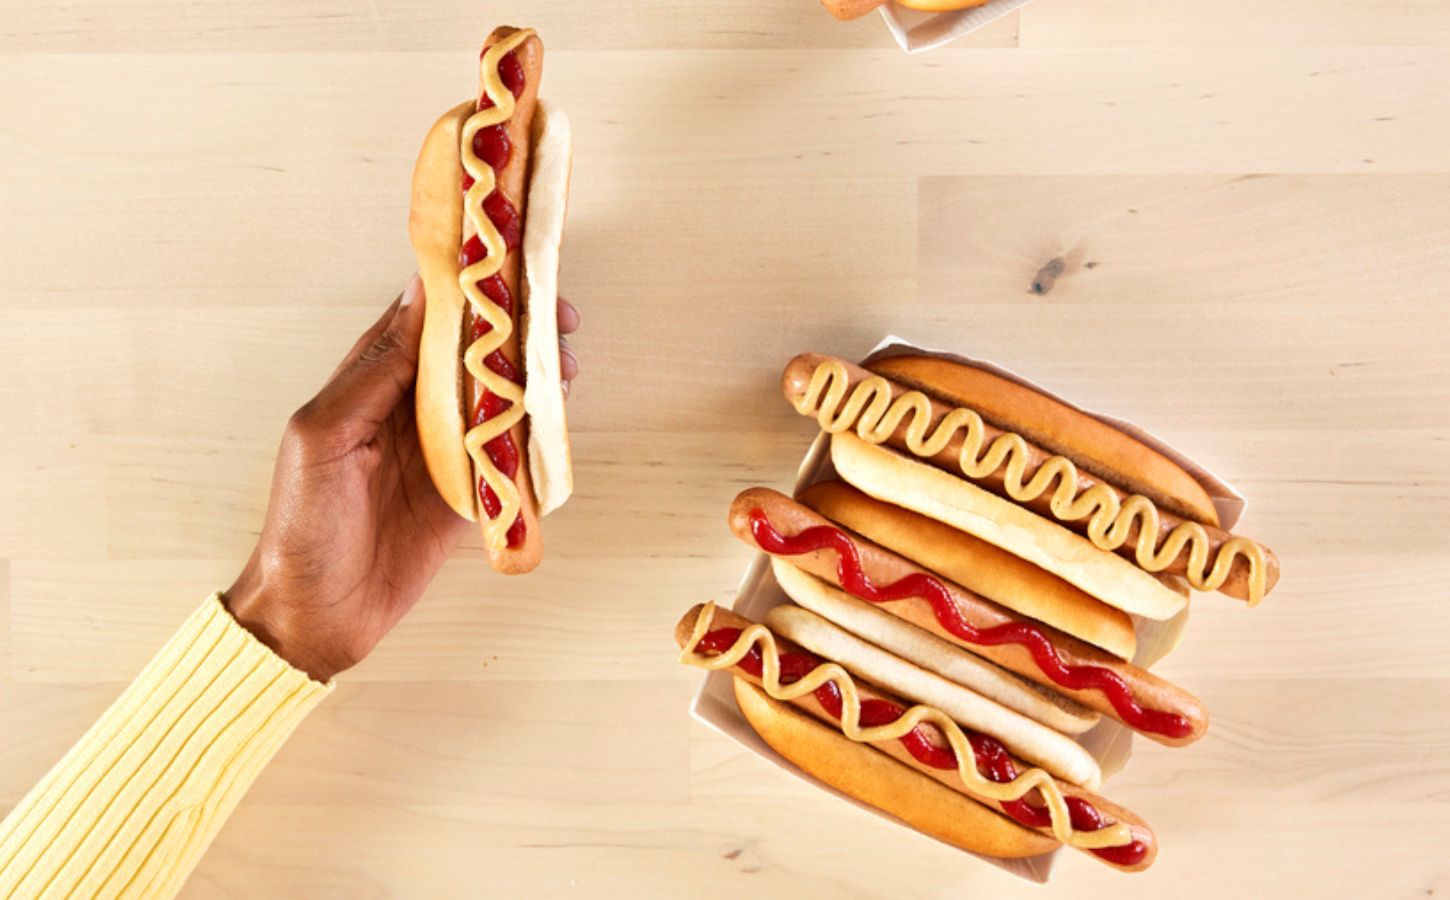 IKEA's new vegan hot dog on a bun with sauce